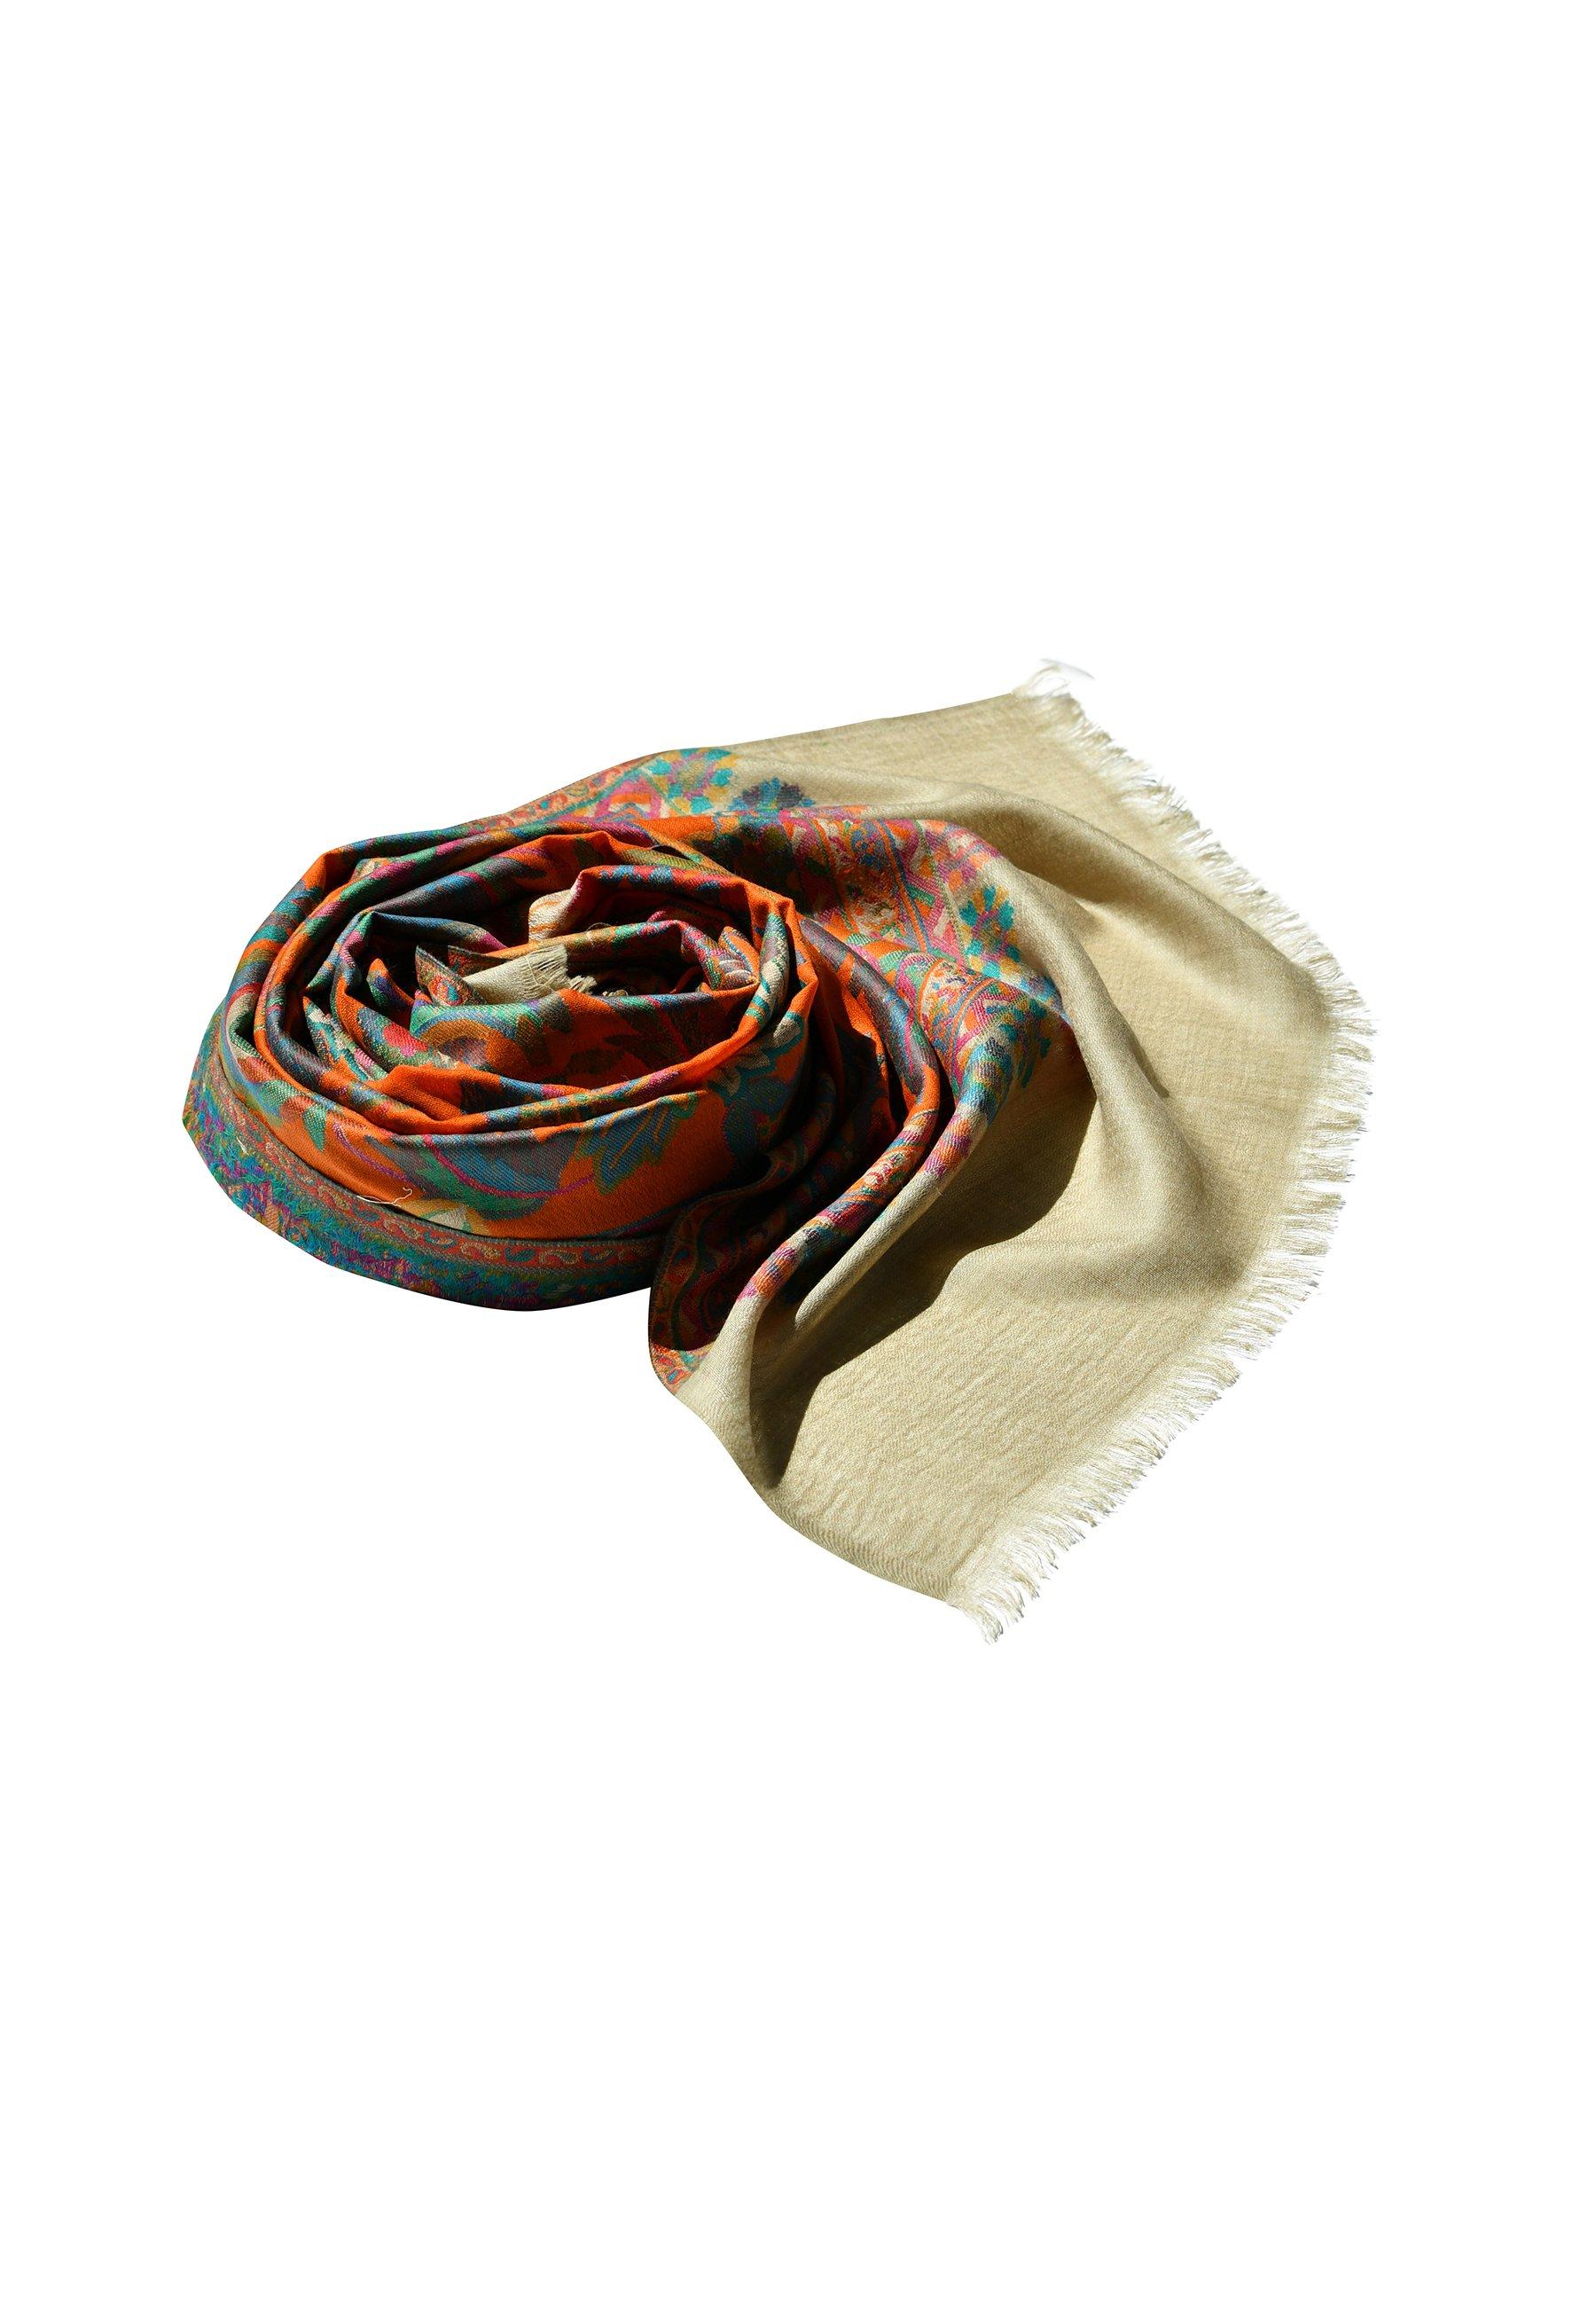 цена Кашемировый шарф. Кашемировый шелковый шарф ручной работы, элегантный гобелен, (цельный кусок), 80 см X 200 см, цветочный узор, соткан вручную, без принта Blue Chilli, оранжевый